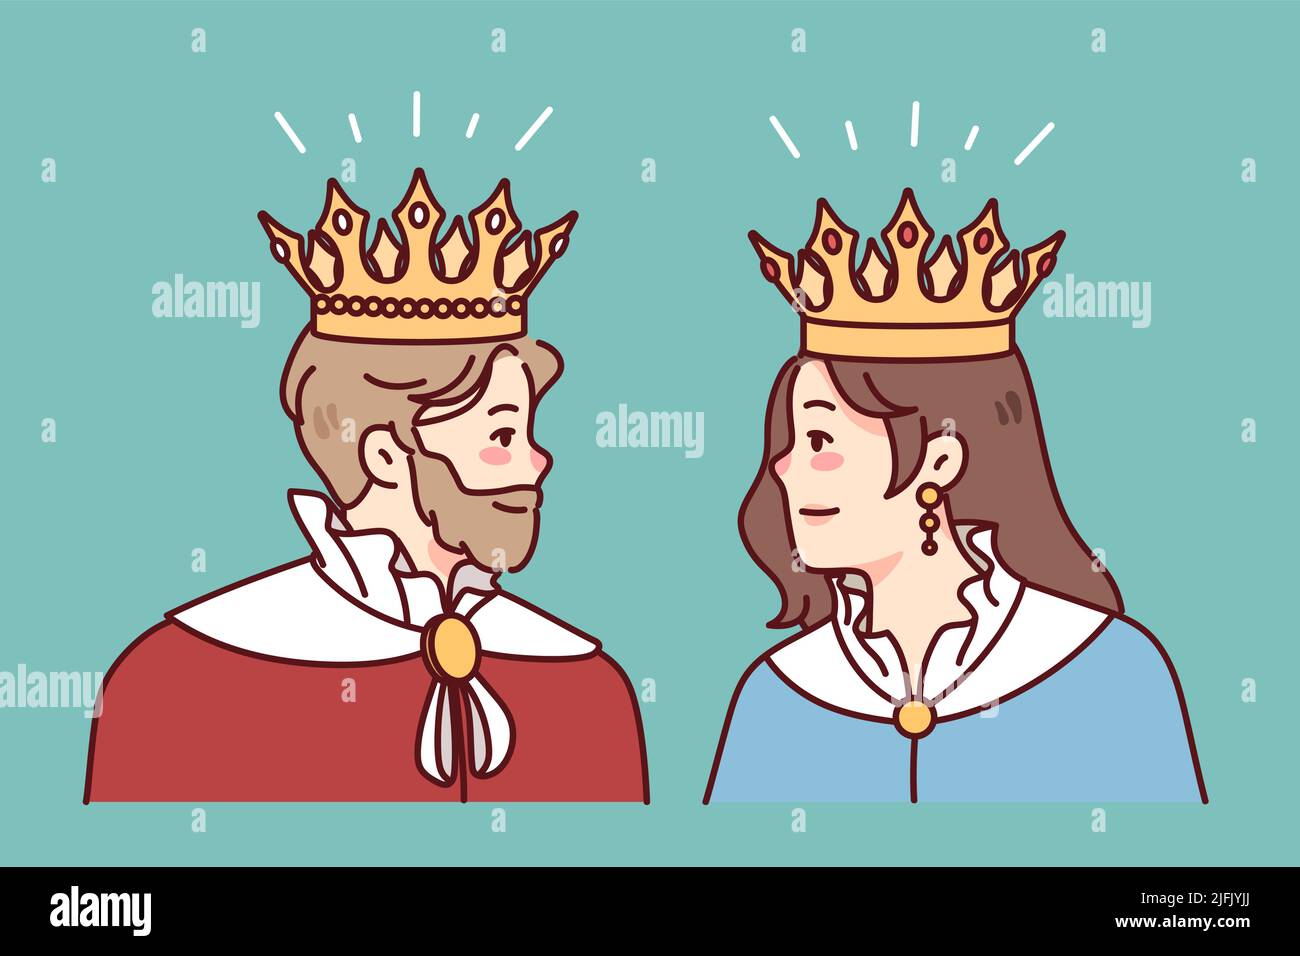 Un roi et une reine dans les bouilloires et les couronnes se regardent l'un l'autre. Membres de la famille royale en peignoirs. Royauté et monarchie. Illustration vectorielle. Illustration de Vecteur